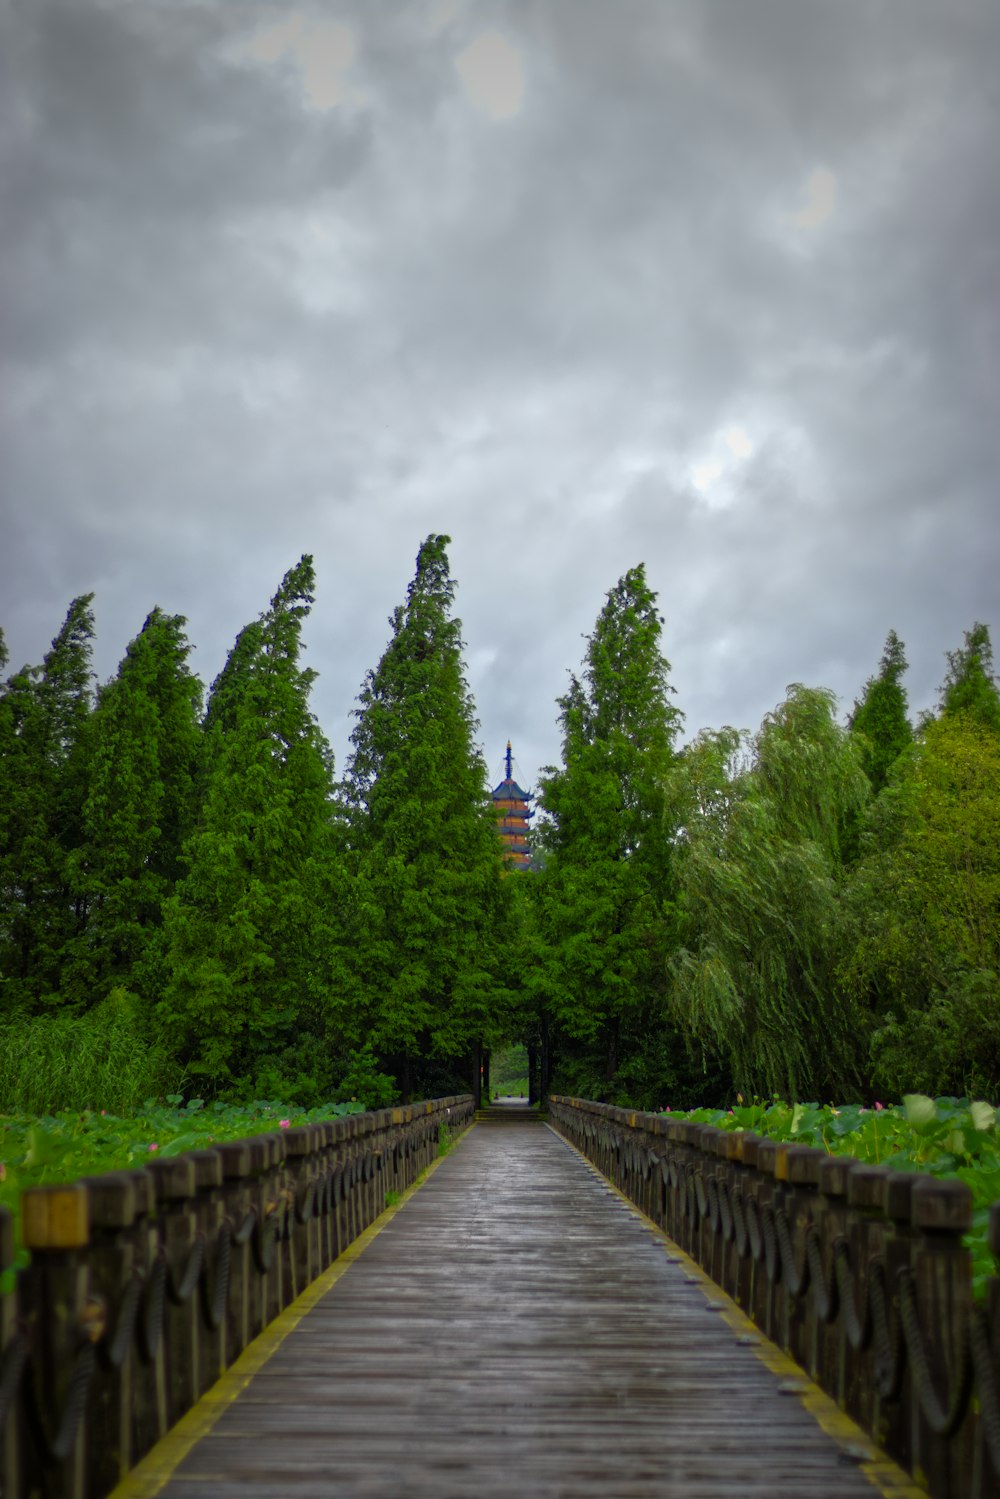 gray wooden bridge between green trees under gray sky